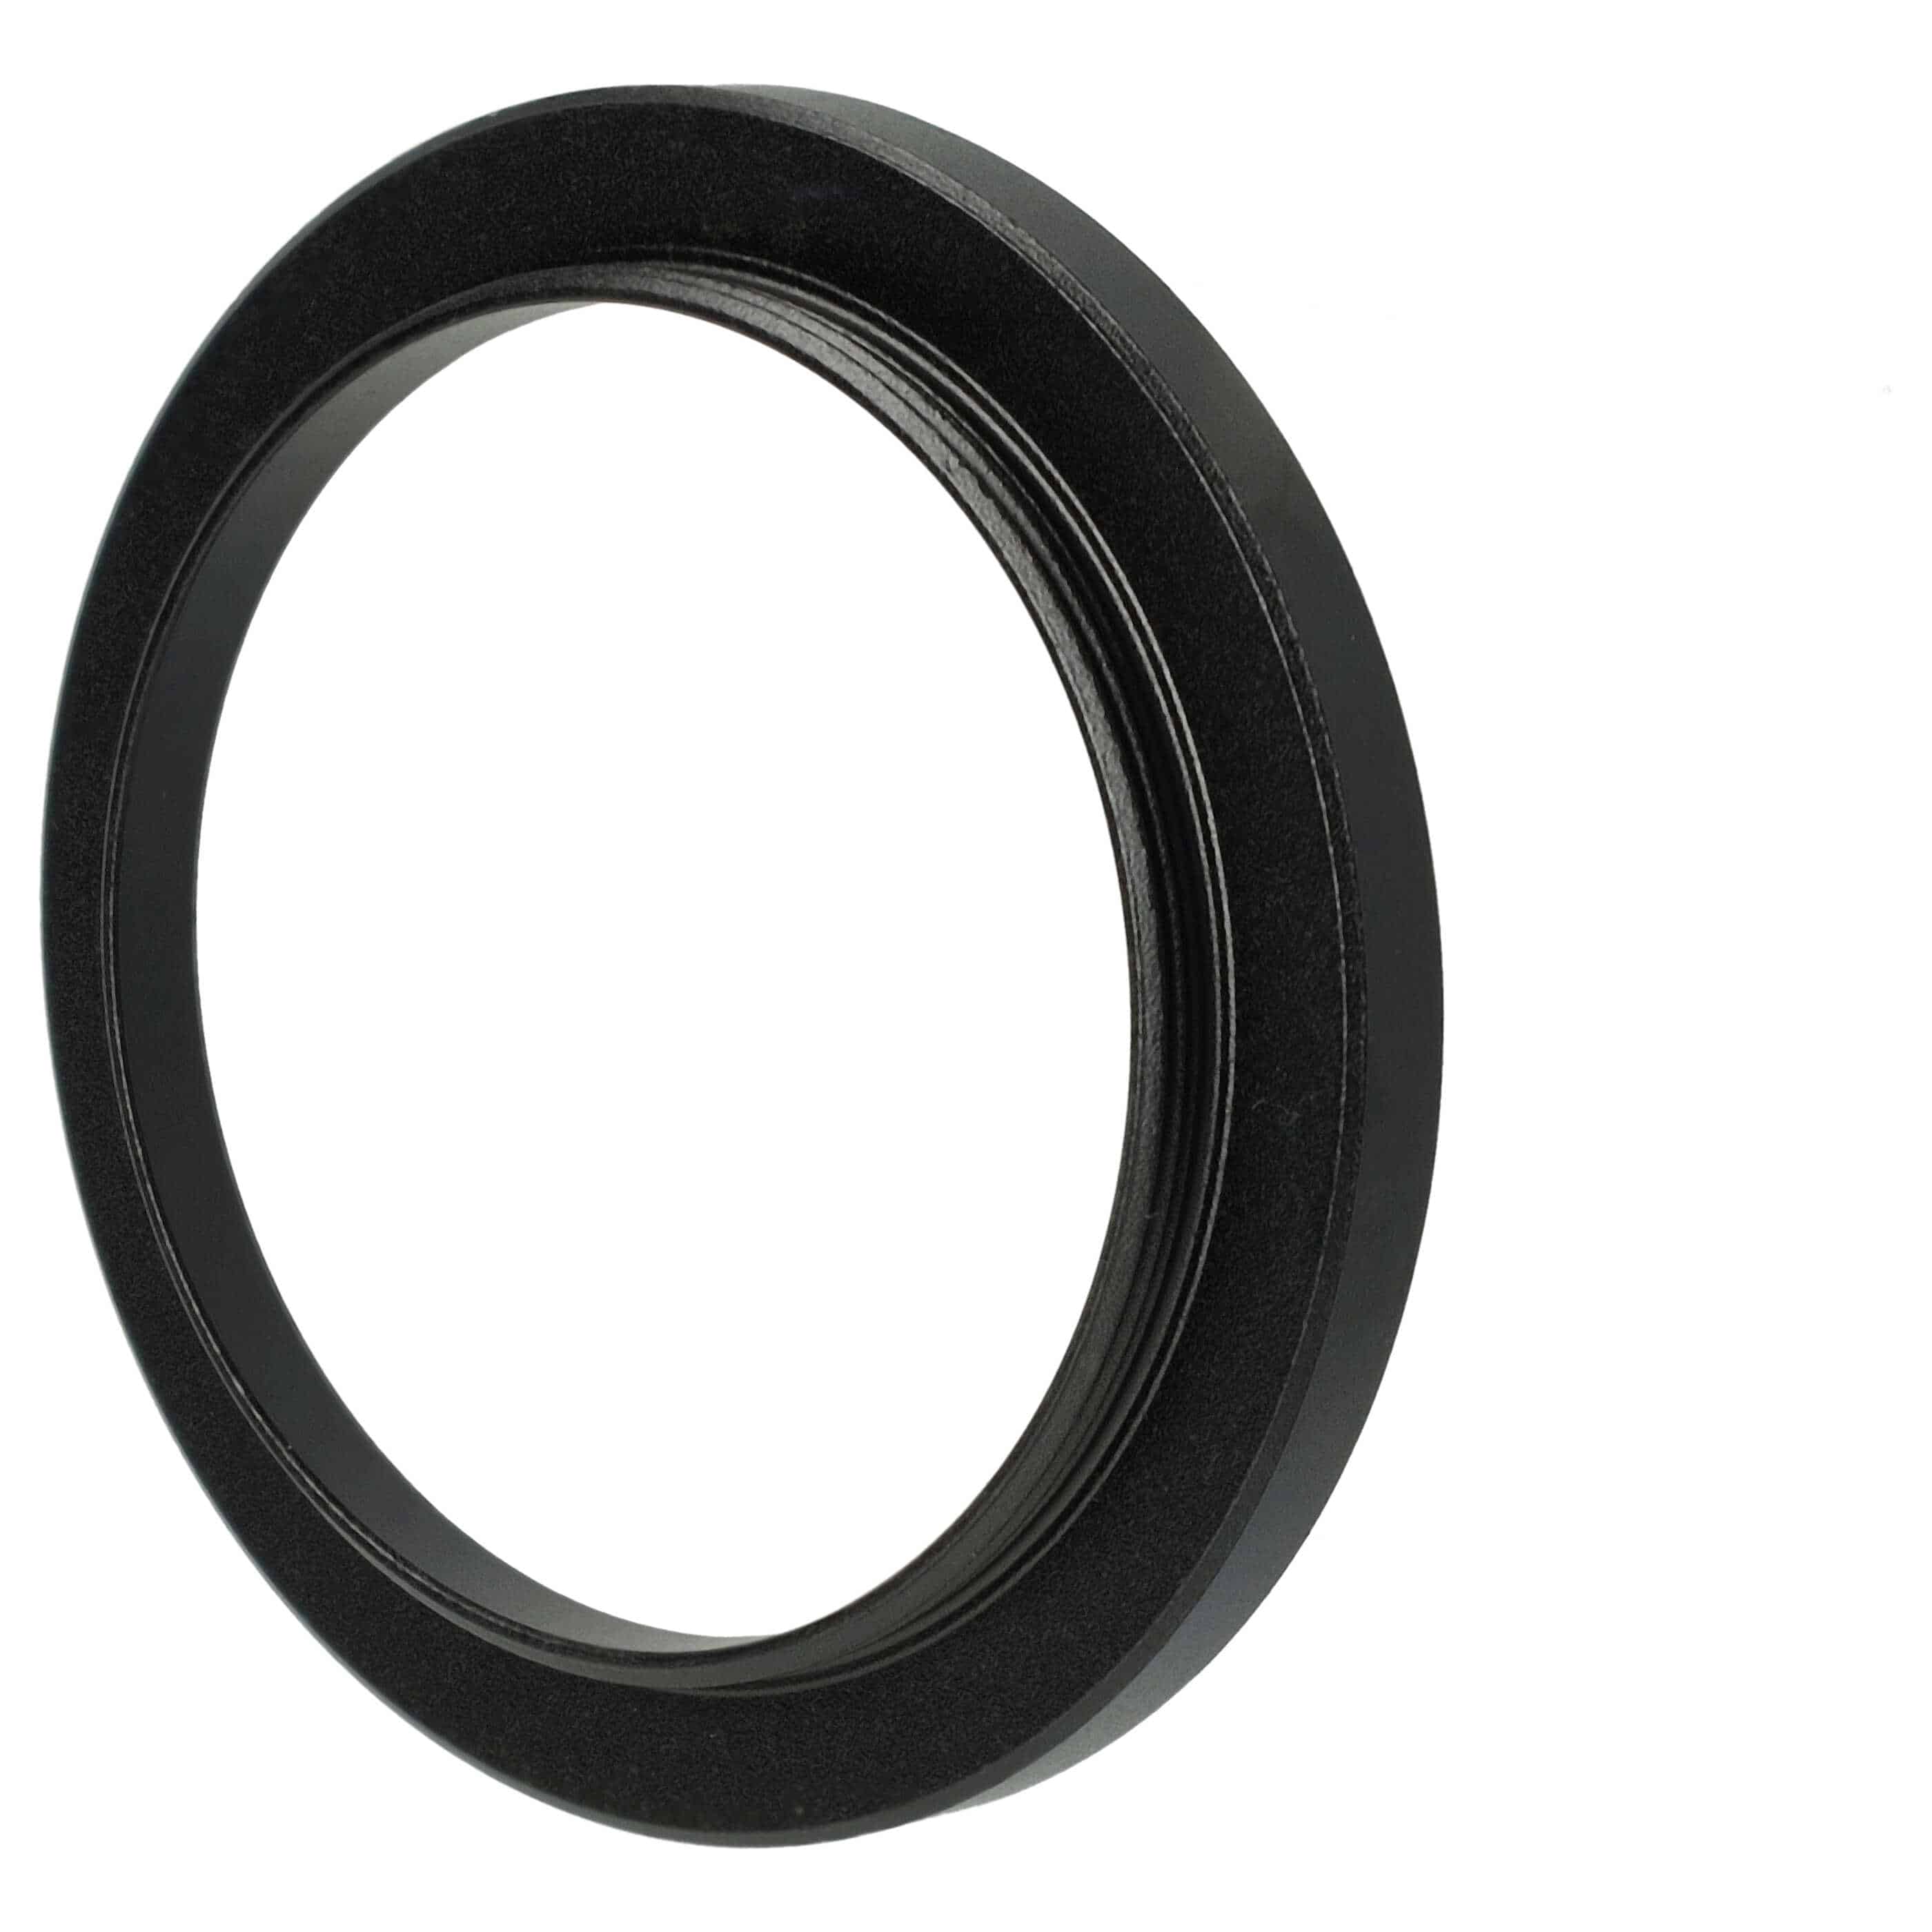 Step-Up-Ring Adapter 37 mm auf 43 mm passend für diverse Kamera-Objektive - Filteradapter